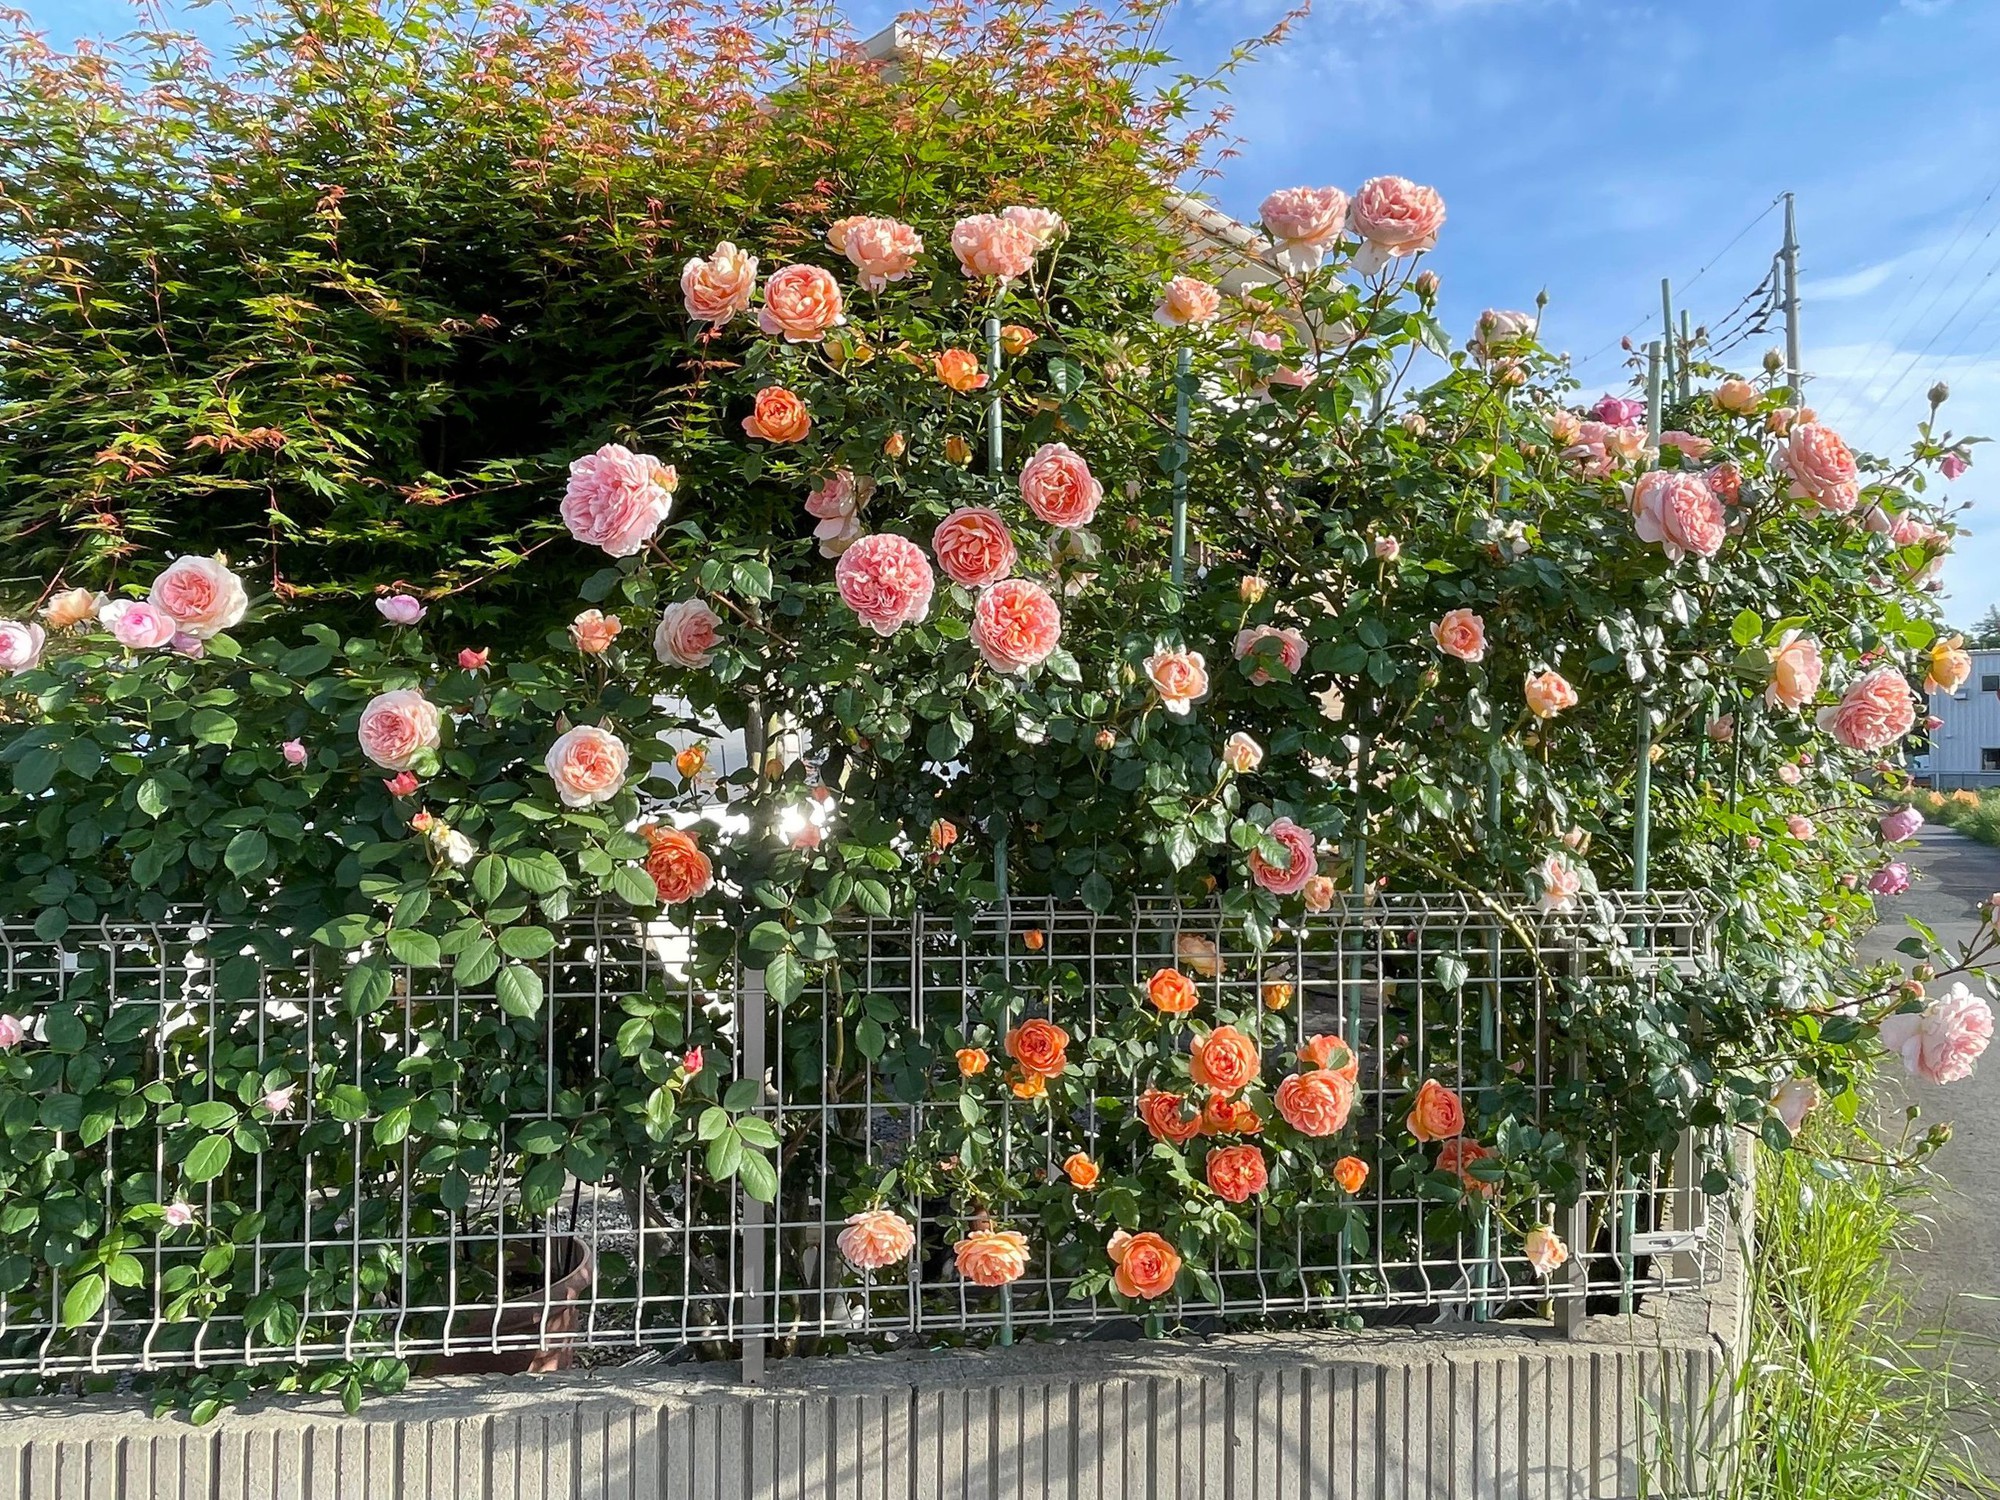 Ngôi nhà lúc nào cũng thơm nức mùi hoa vì có vườn hồng hơn 80 loại của mẹ Việt ở Nhật- Ảnh 8.